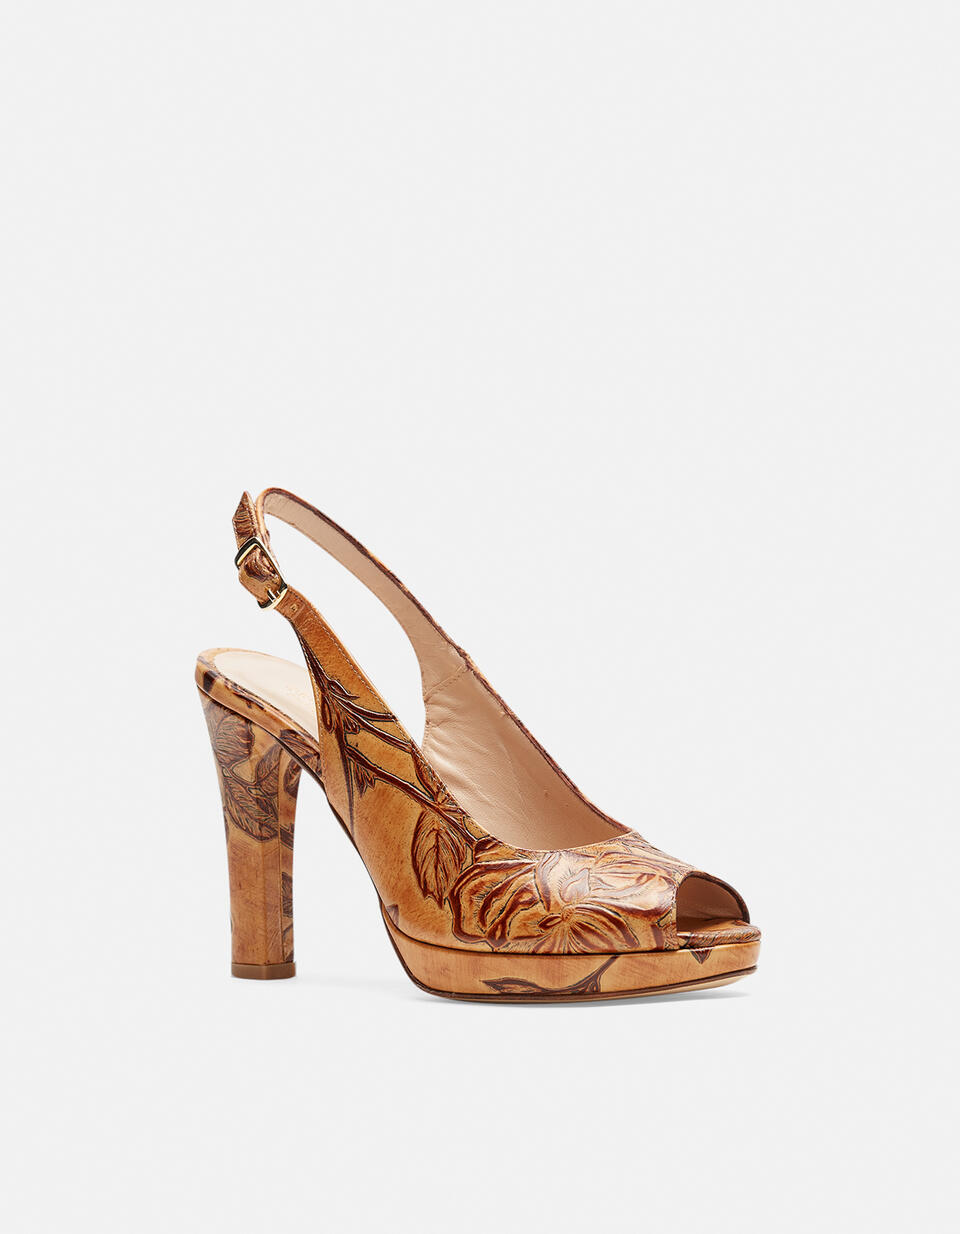 MONROE SANDAL  - Woman Shoes - Shoes - Cuoieria Fiorentina